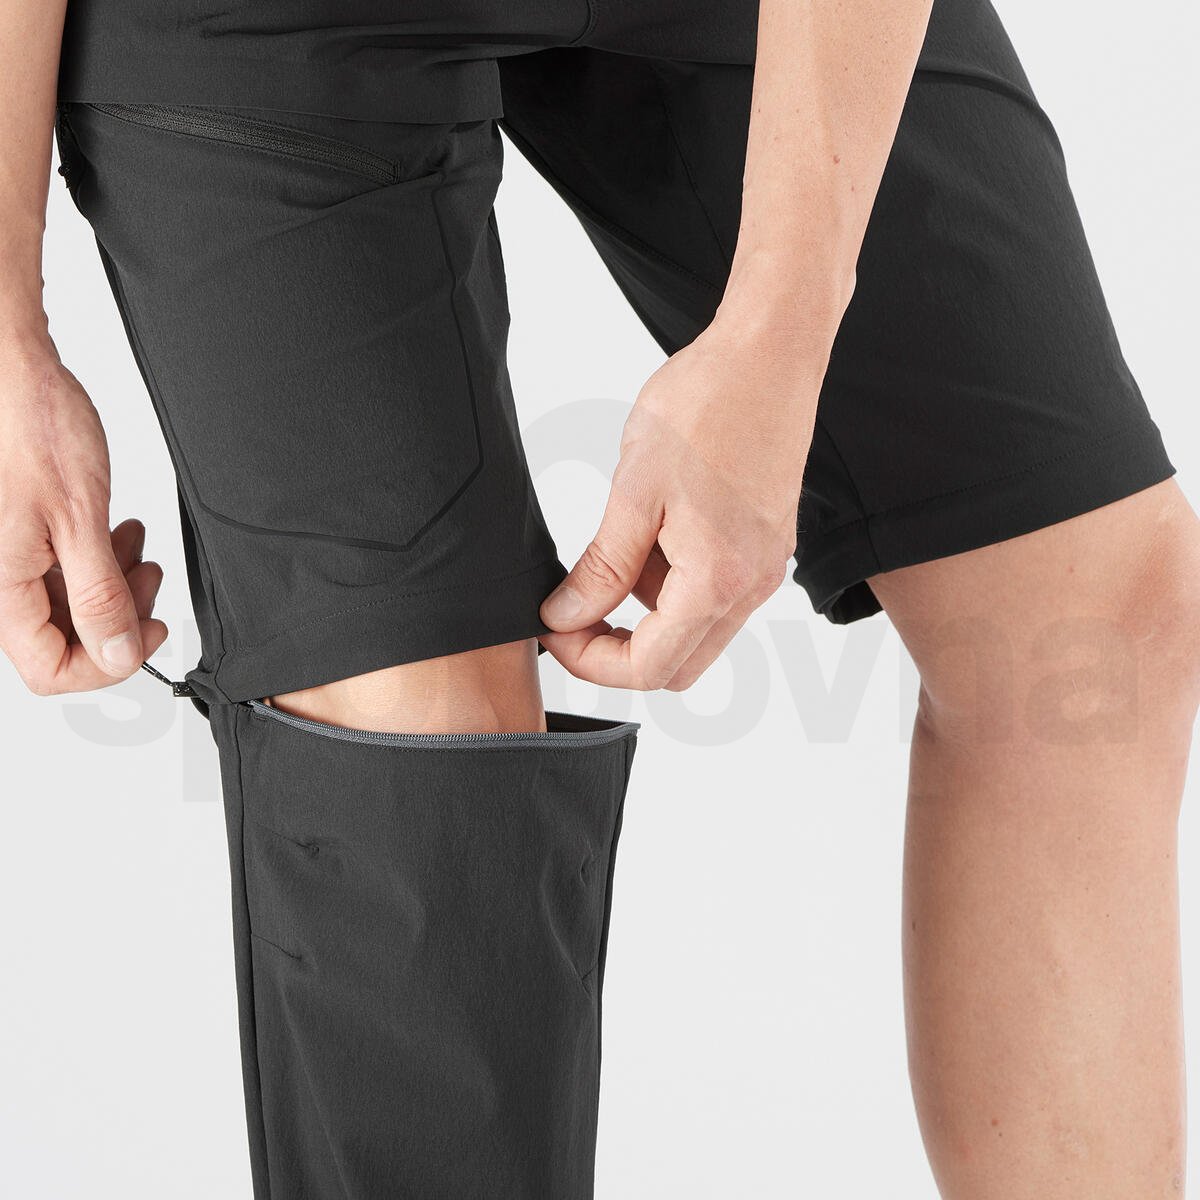 Kalhoty Salomon WAYFARER ZIP OFF PANTS M - černá